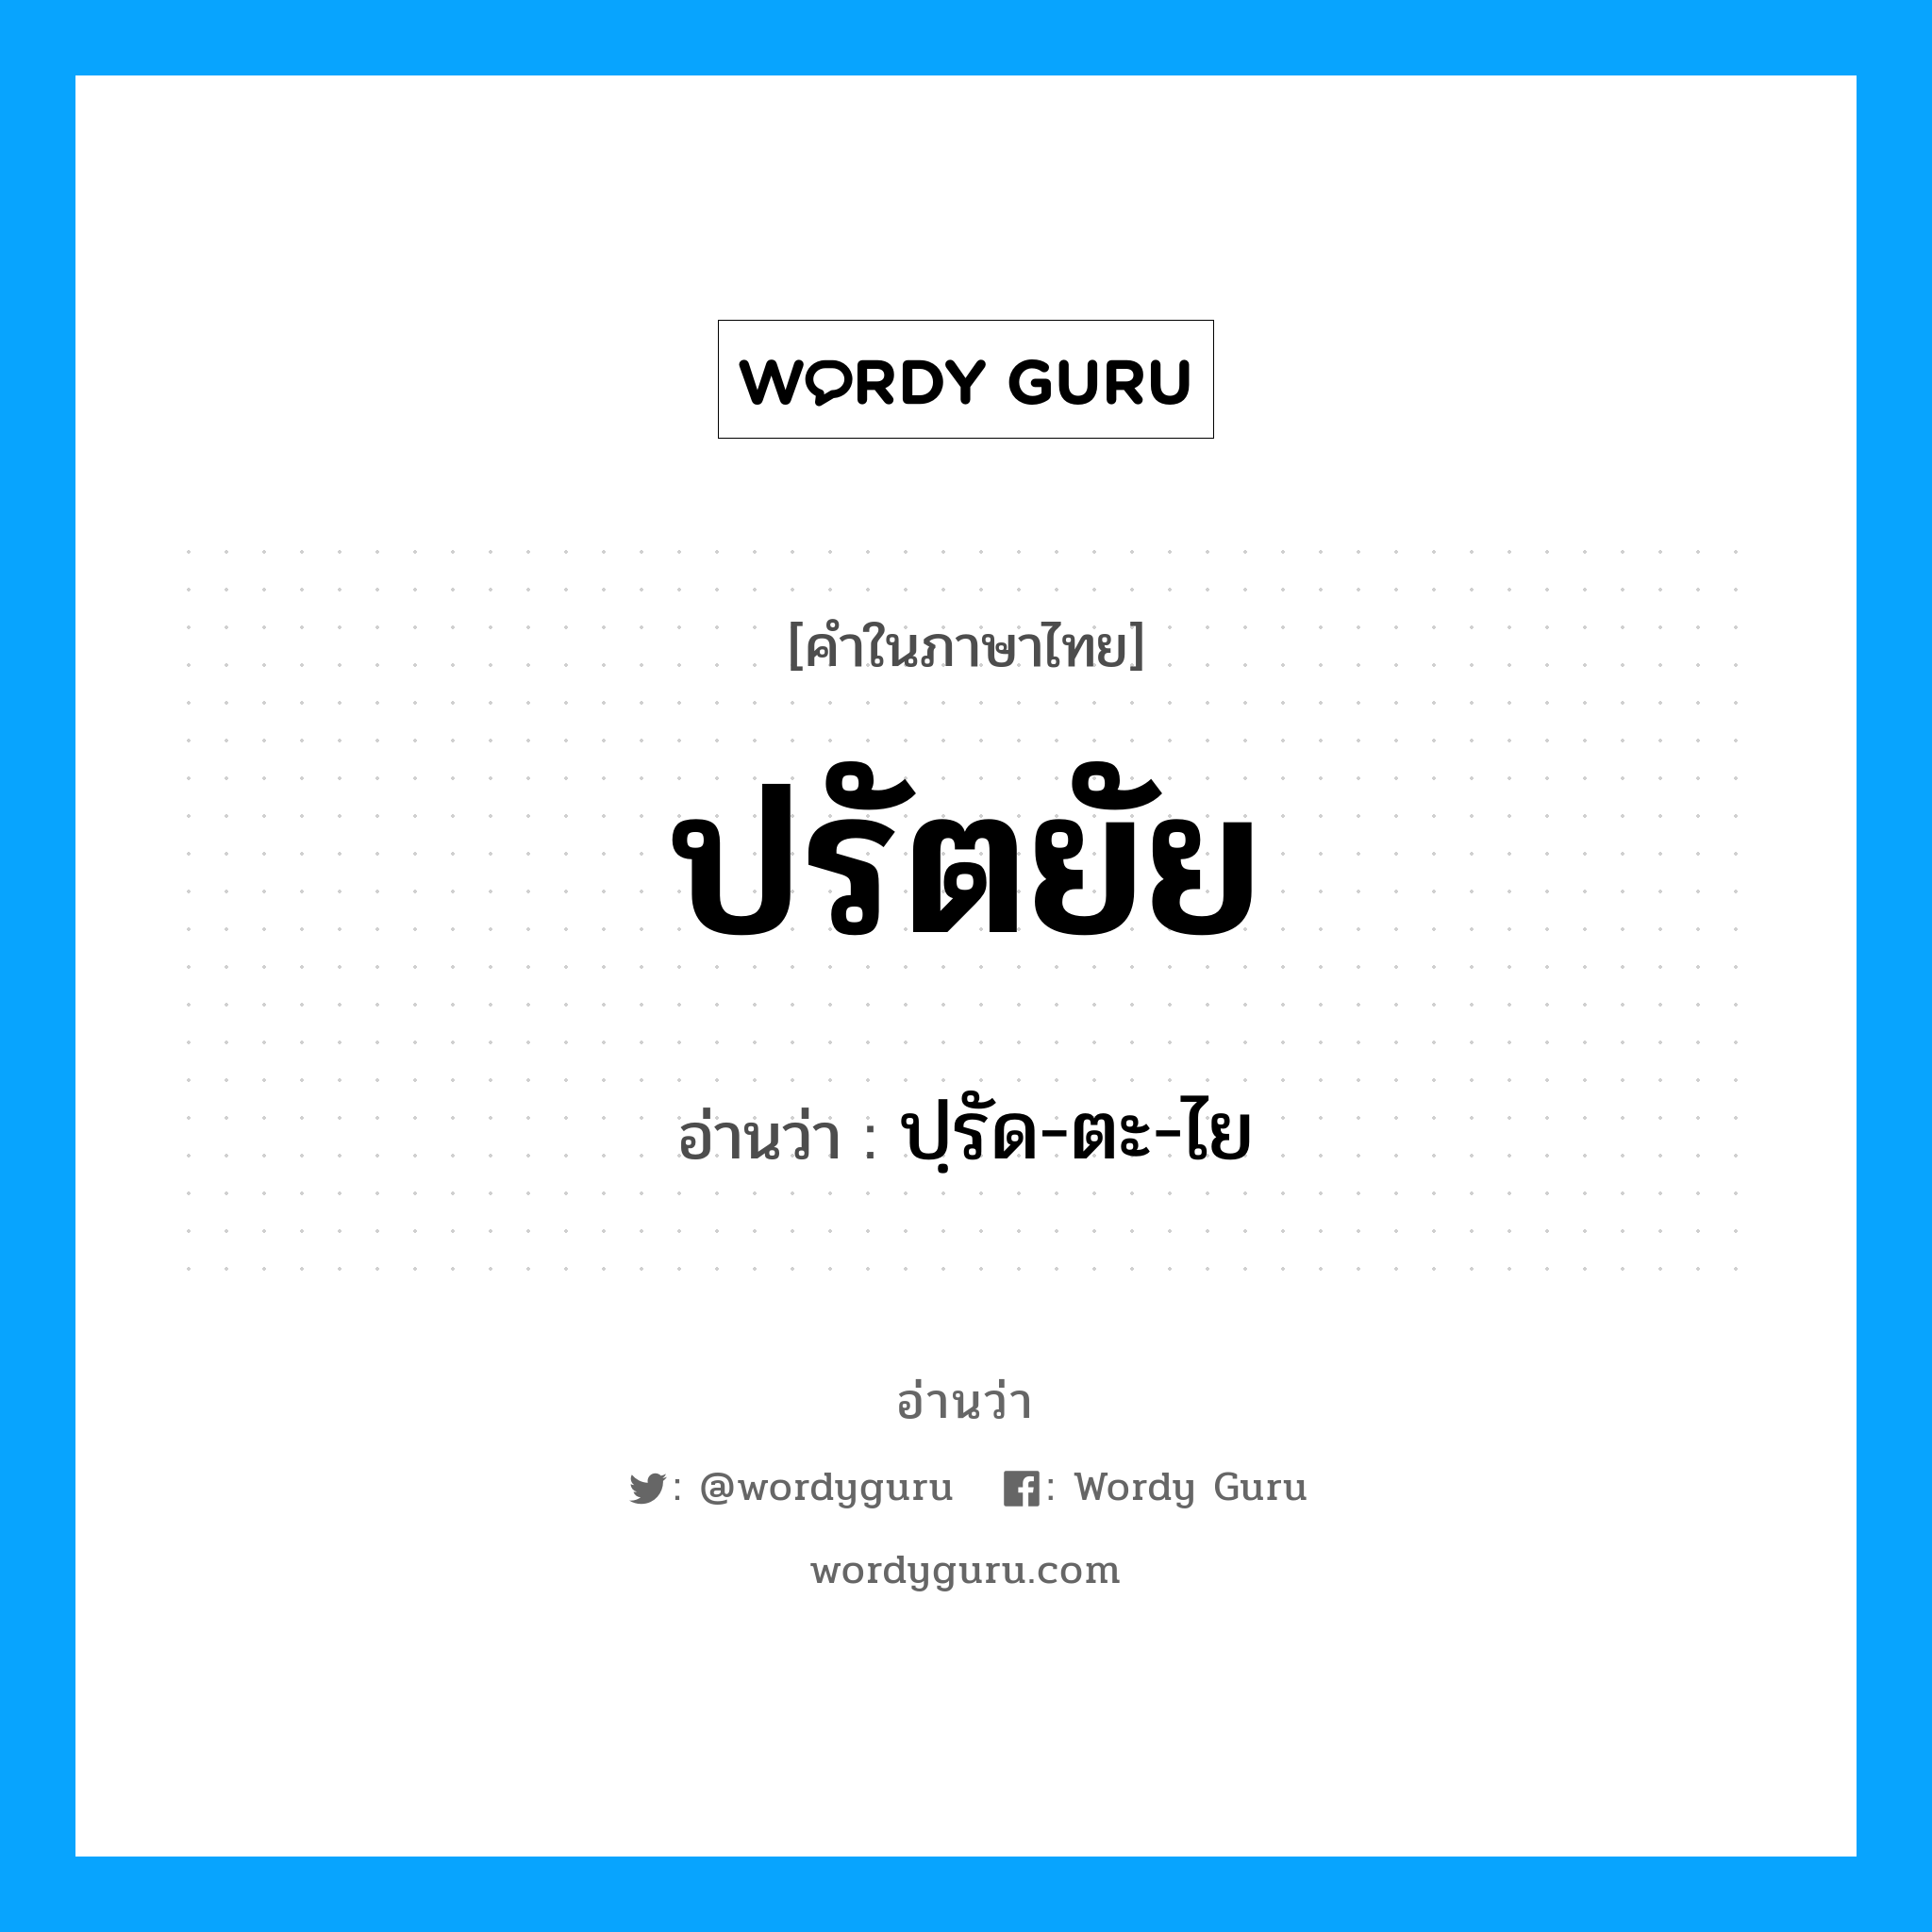 ปรัตยัย อ่านว่า?, คำในภาษาไทย ปรัตยัย อ่านว่า ปฺรัด-ตะ-ไย